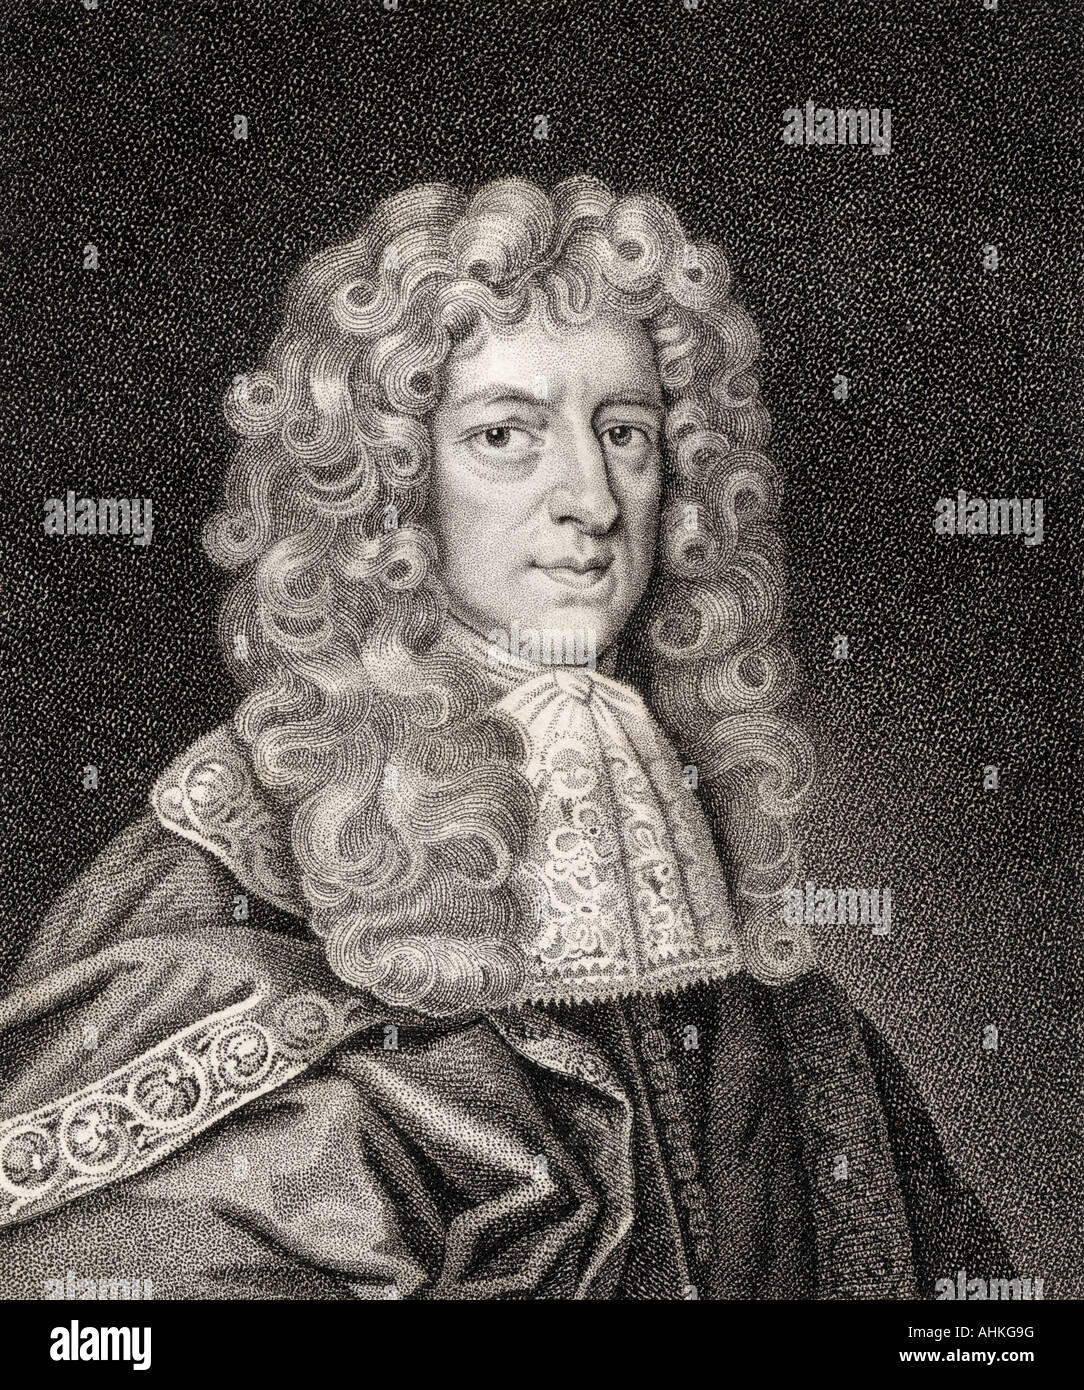 Anthony Ashley Cooper, 3e comte de Shaftesbury, 1671 - 1713. Politicien, philosophe et écrivain anglais. Banque D'Images